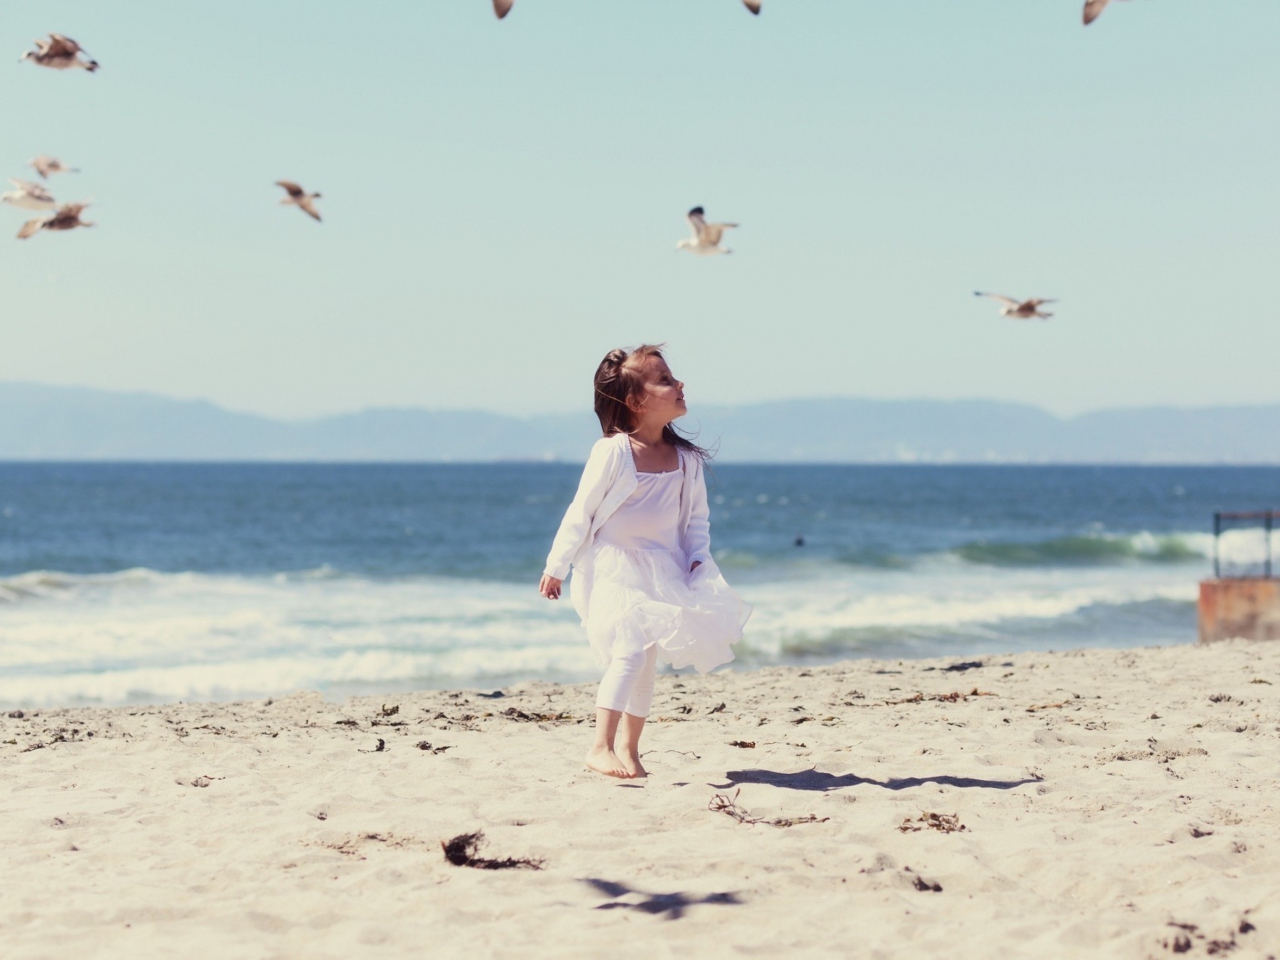 Little Girl At Beach And Seagulls wallpaper 1280x960